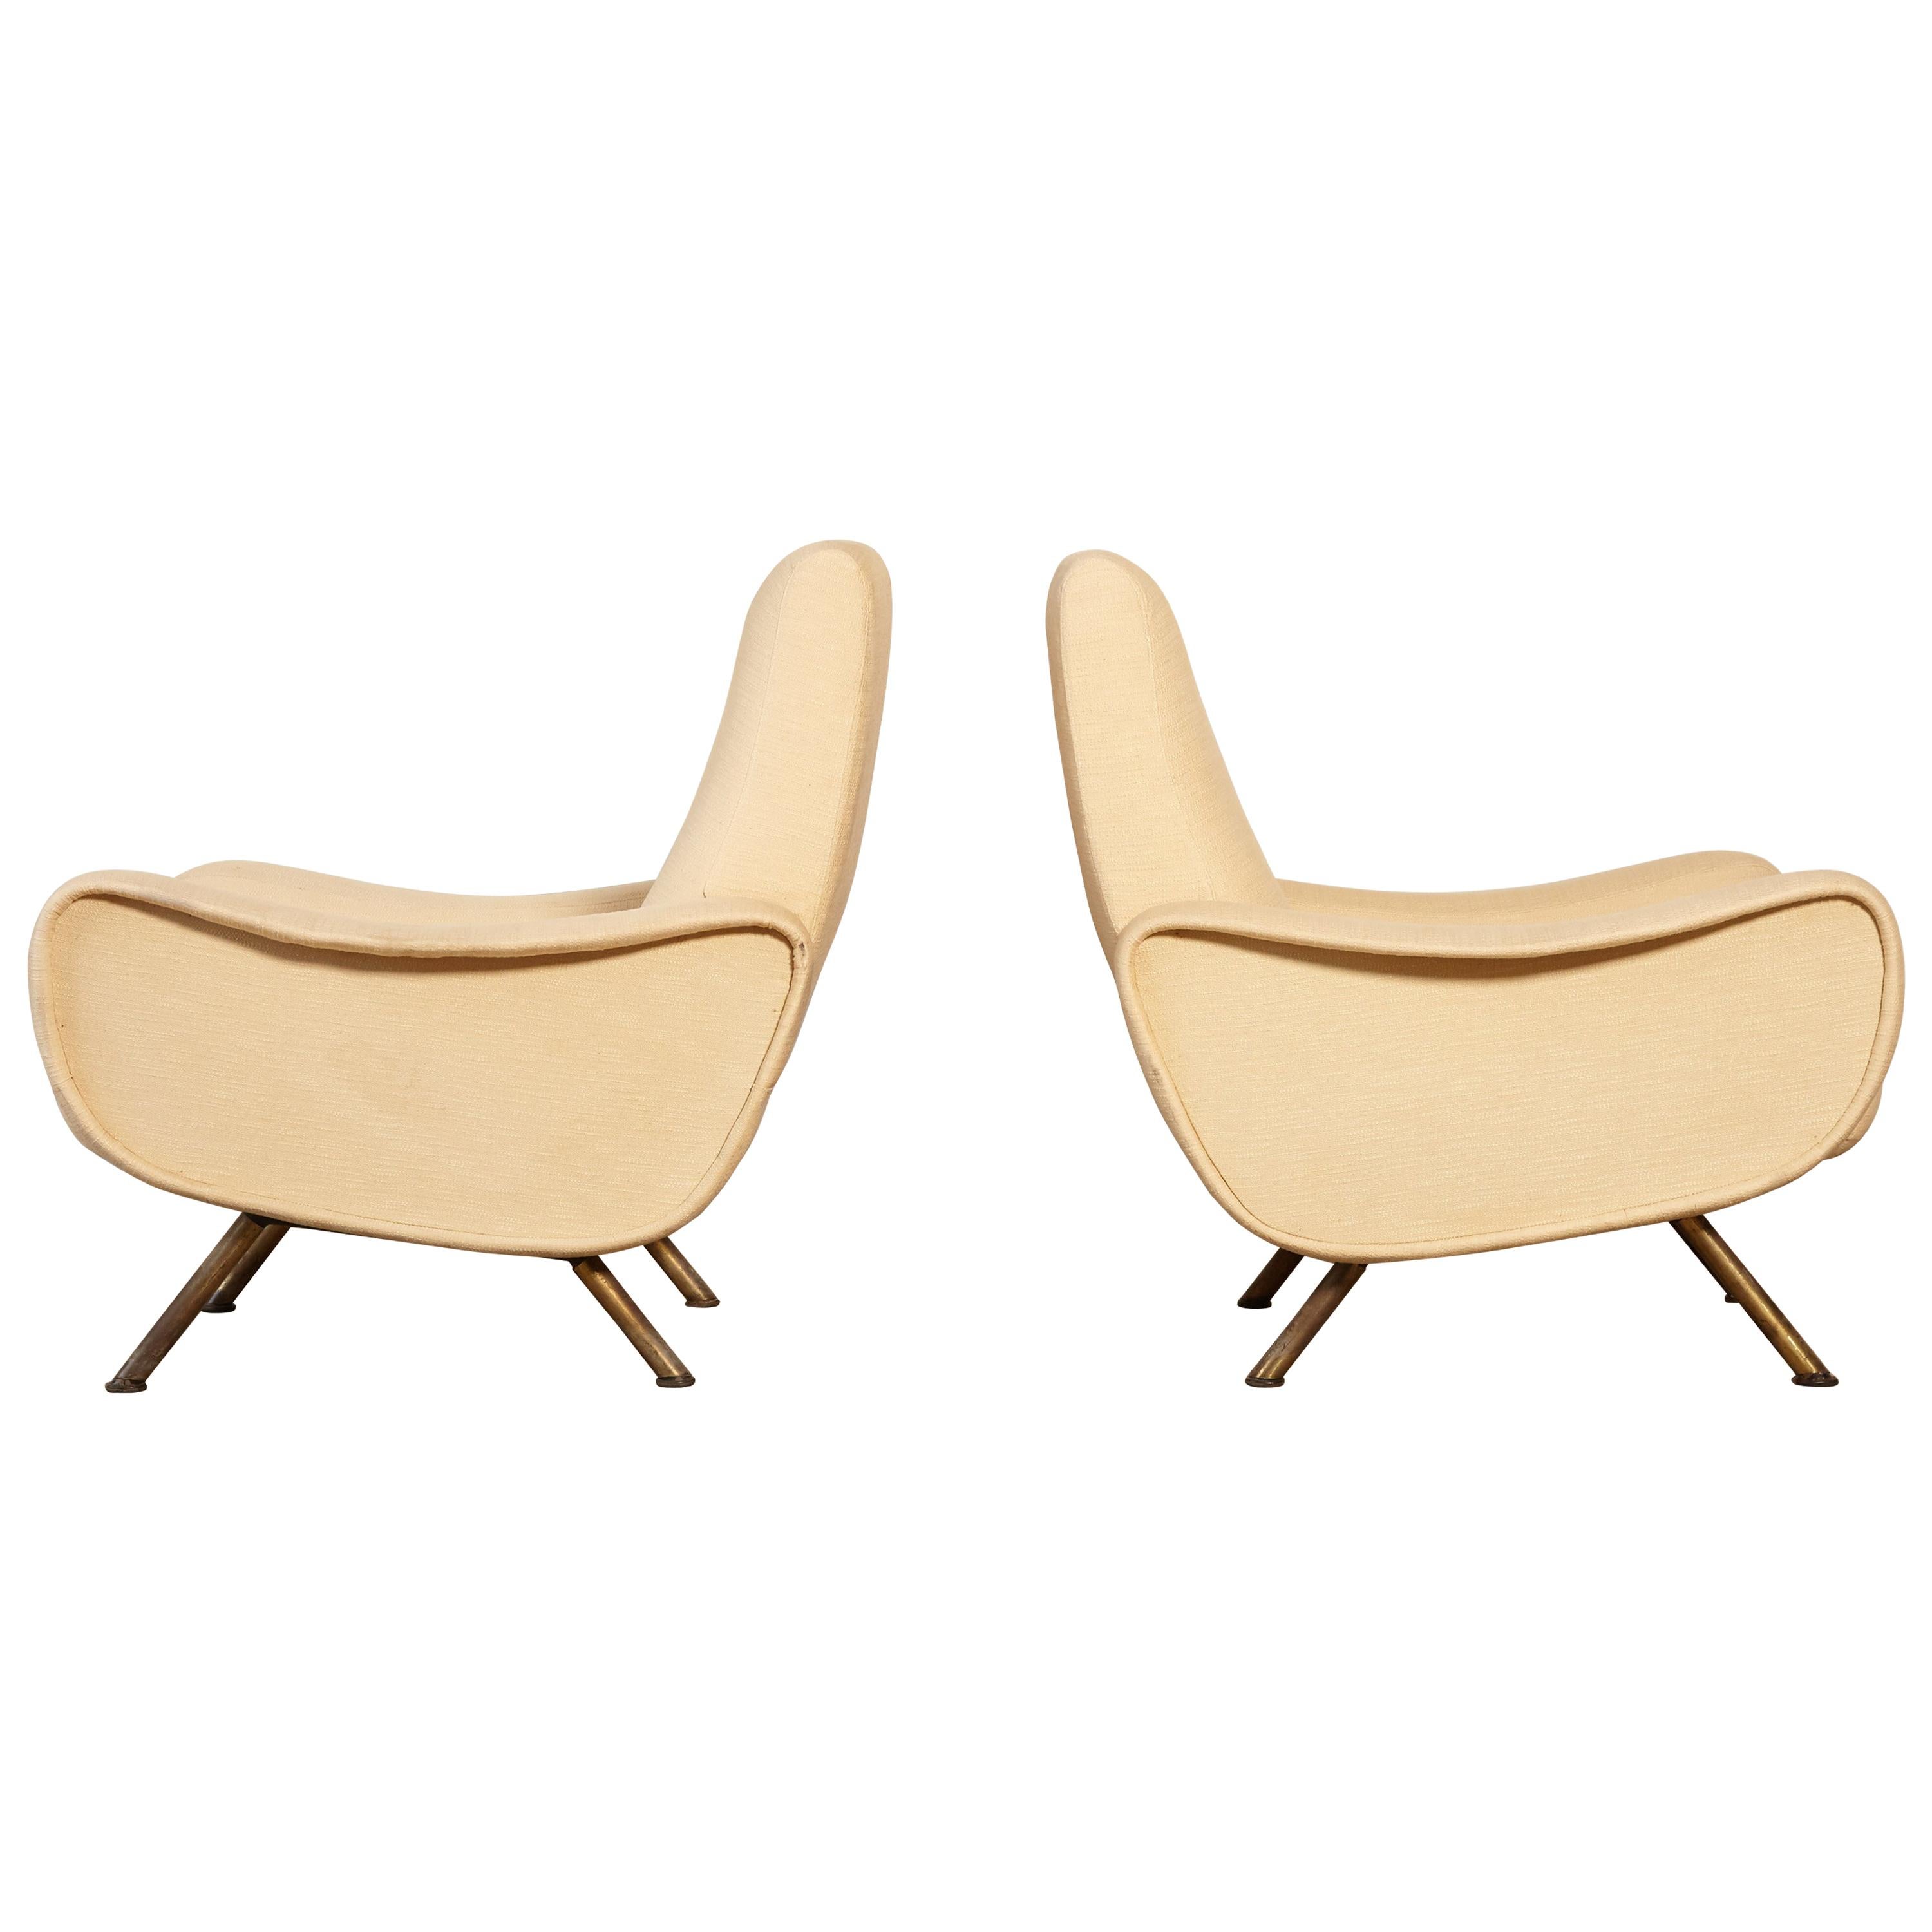 Marco Zanuso Lady Chairs, Arflex, Italy, 1960s-1970s